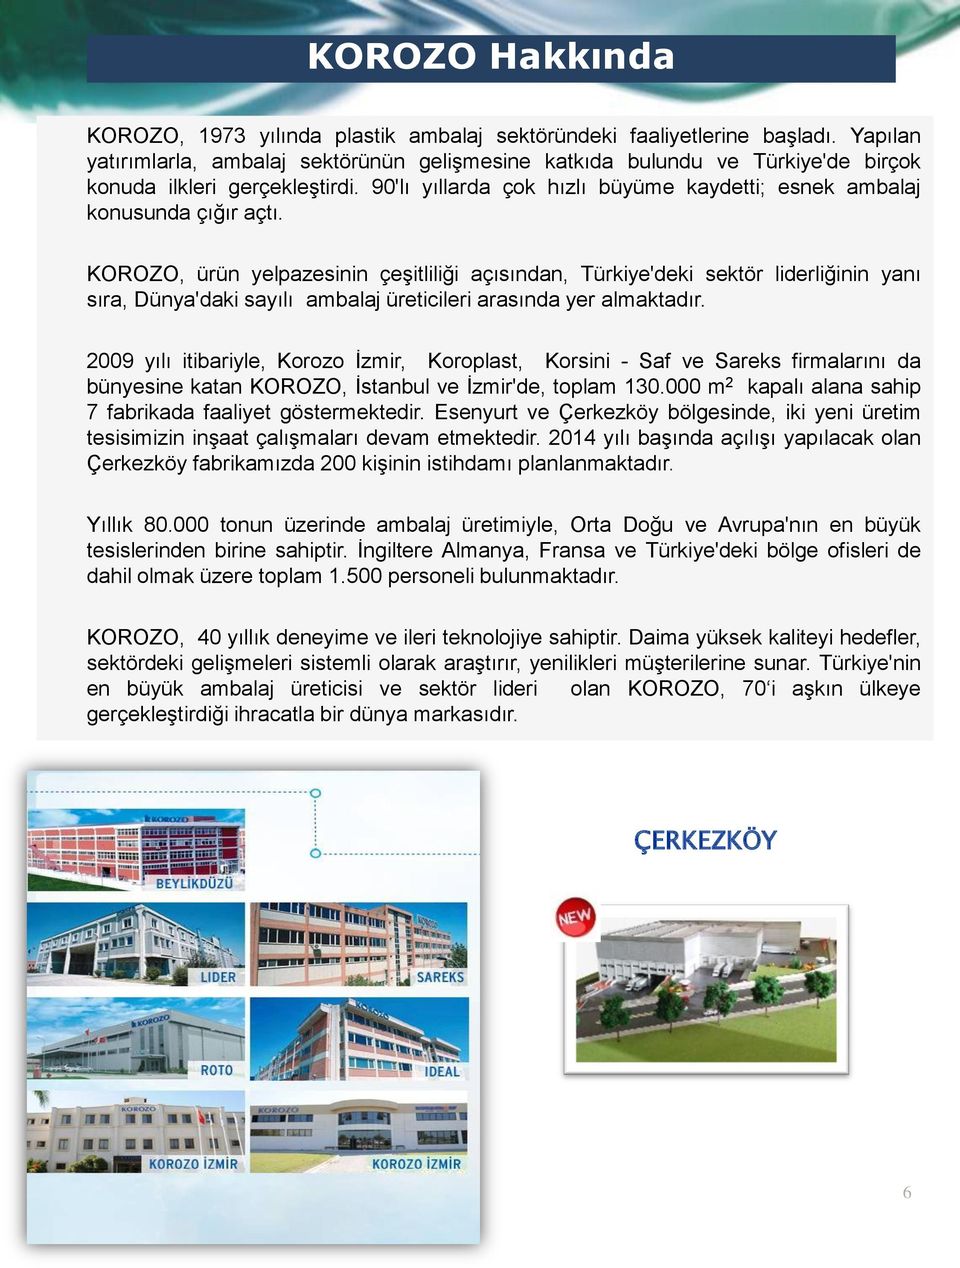 KOROZO, ürün yelpazesinin çeşitliliği açısından, Türkiye'deki sektör liderliğinin yanı sıra, Dünya'daki sayılı ambalaj üreticileri arasında yer almaktadır.